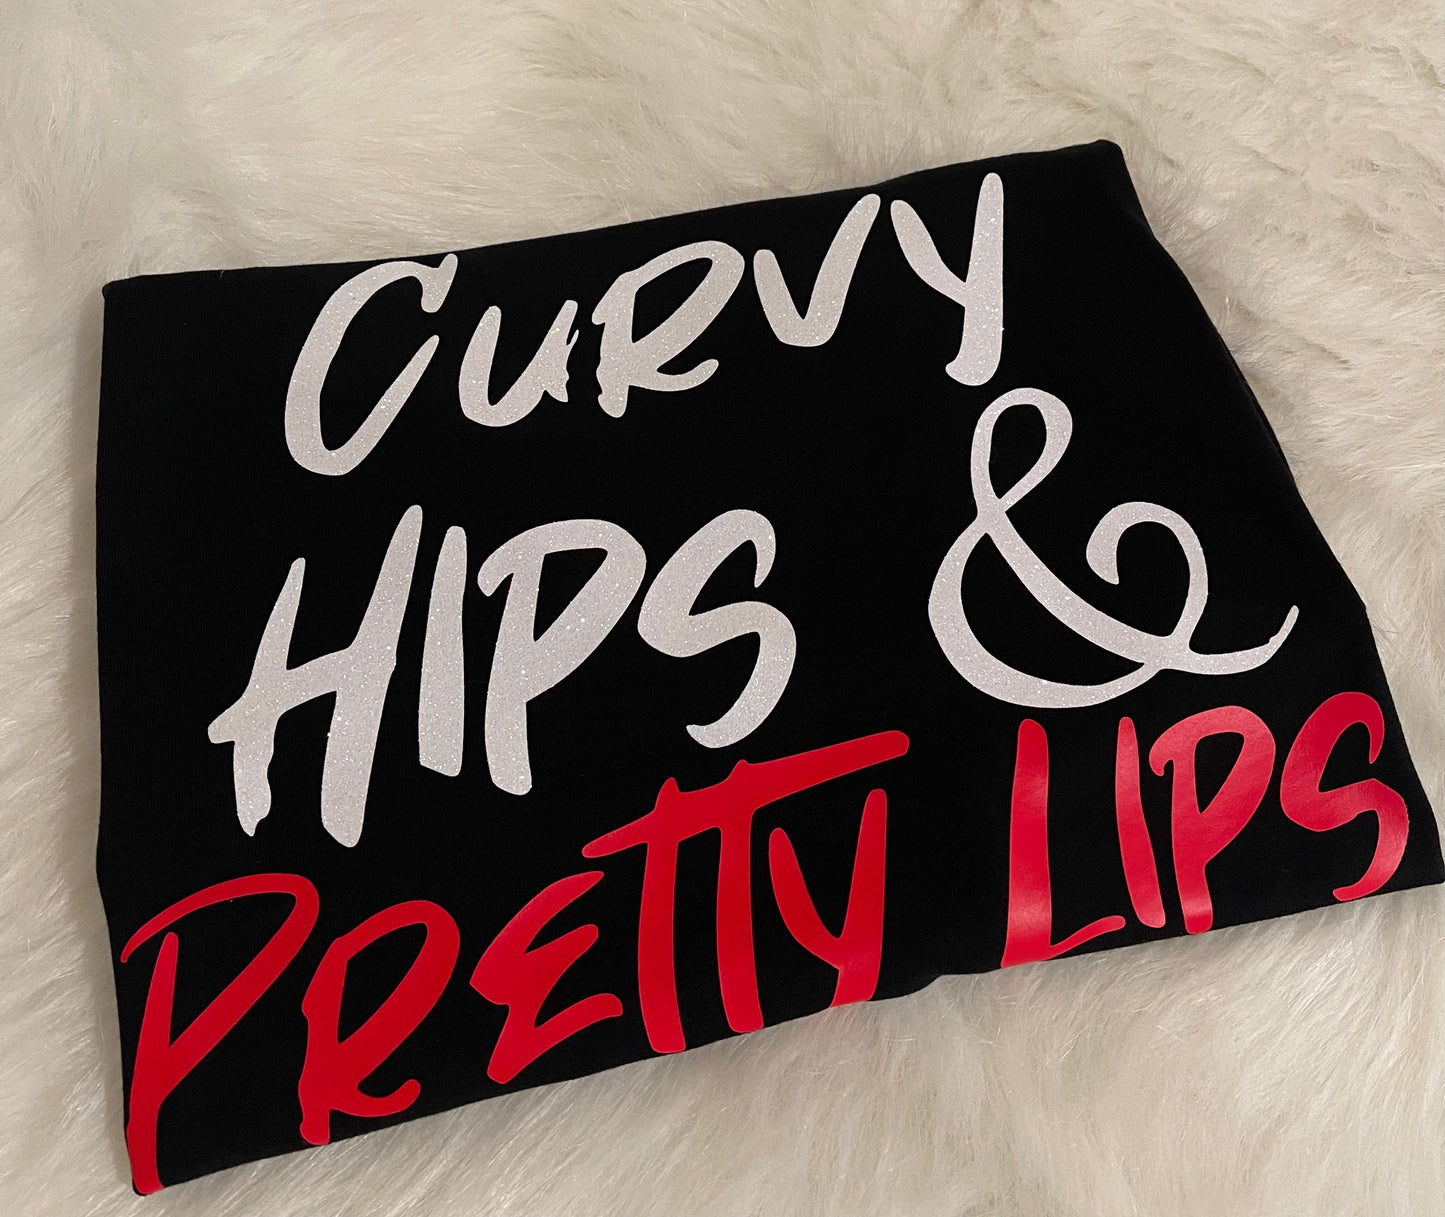 "Curvy Hips & Pretty Lips💋”